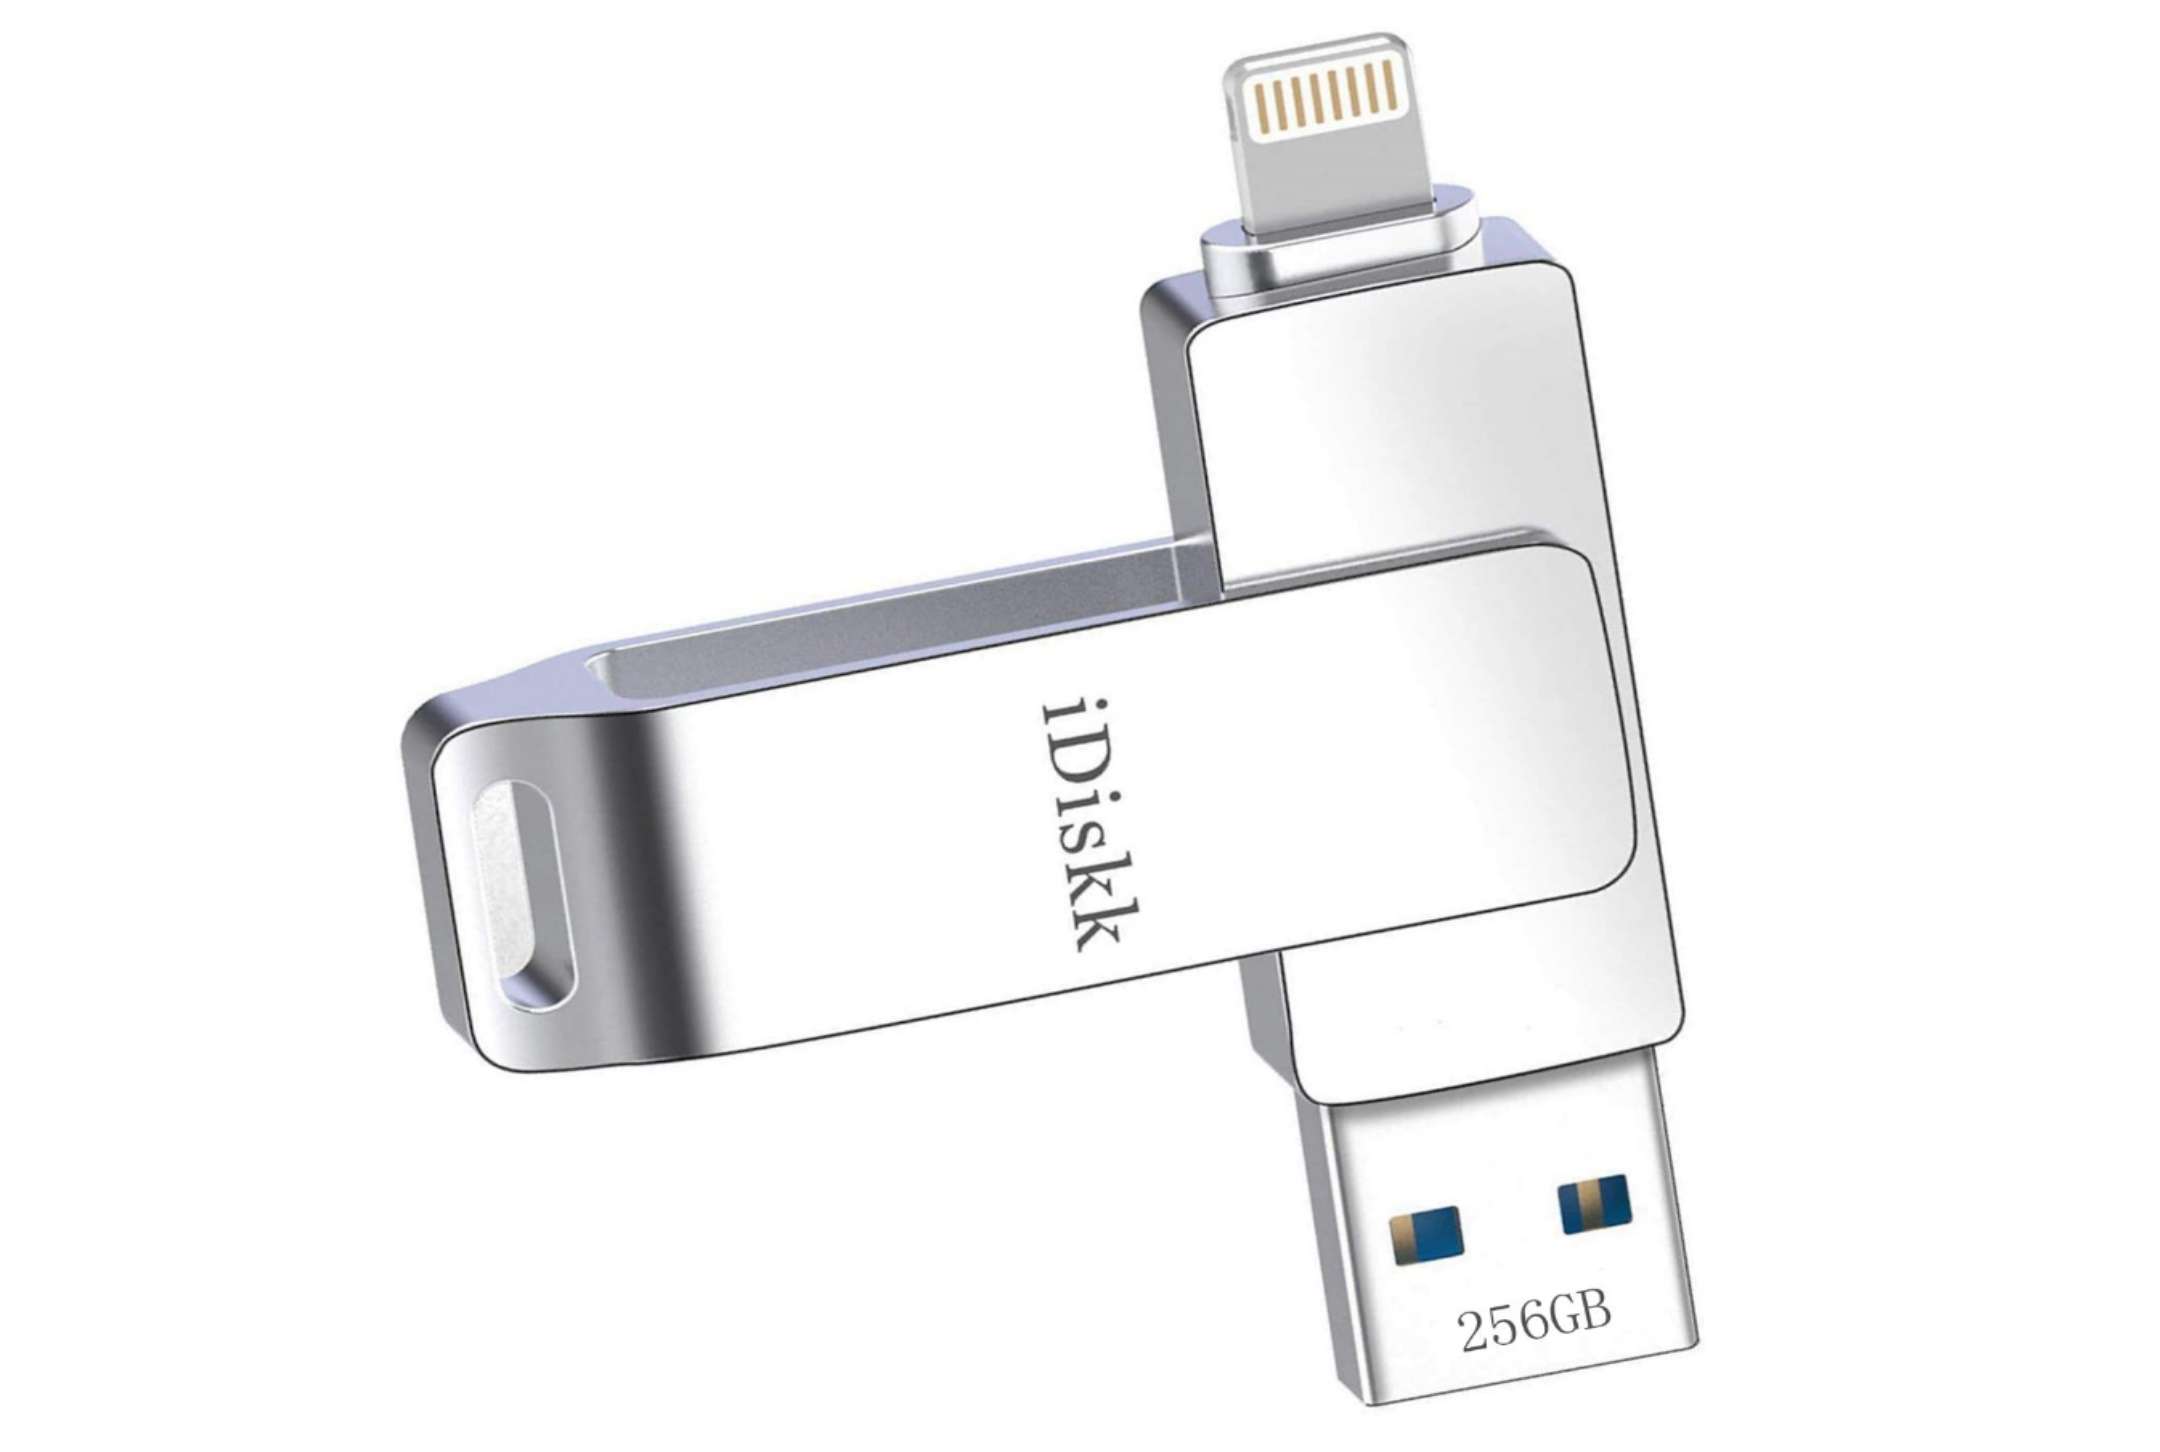 Chiavetta iPhone e iPad USB 3.0 256GB in offerta